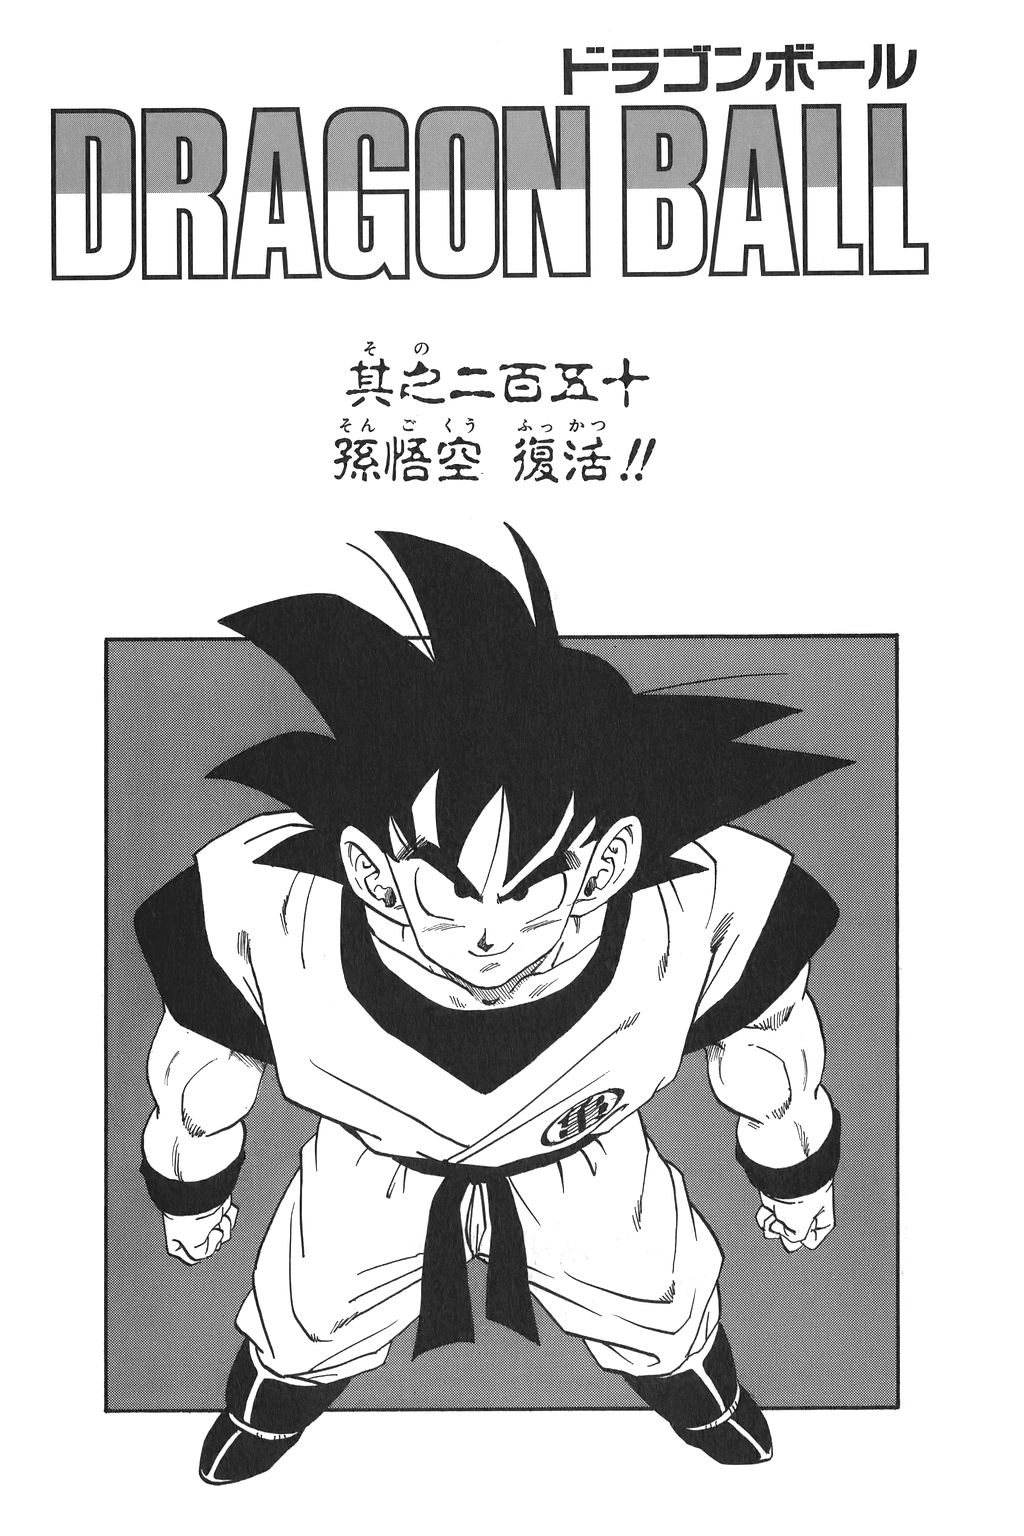 Dragon Ball Super  Novo arco do mangá traz redenção de Vegeta com povo de  Namekusei